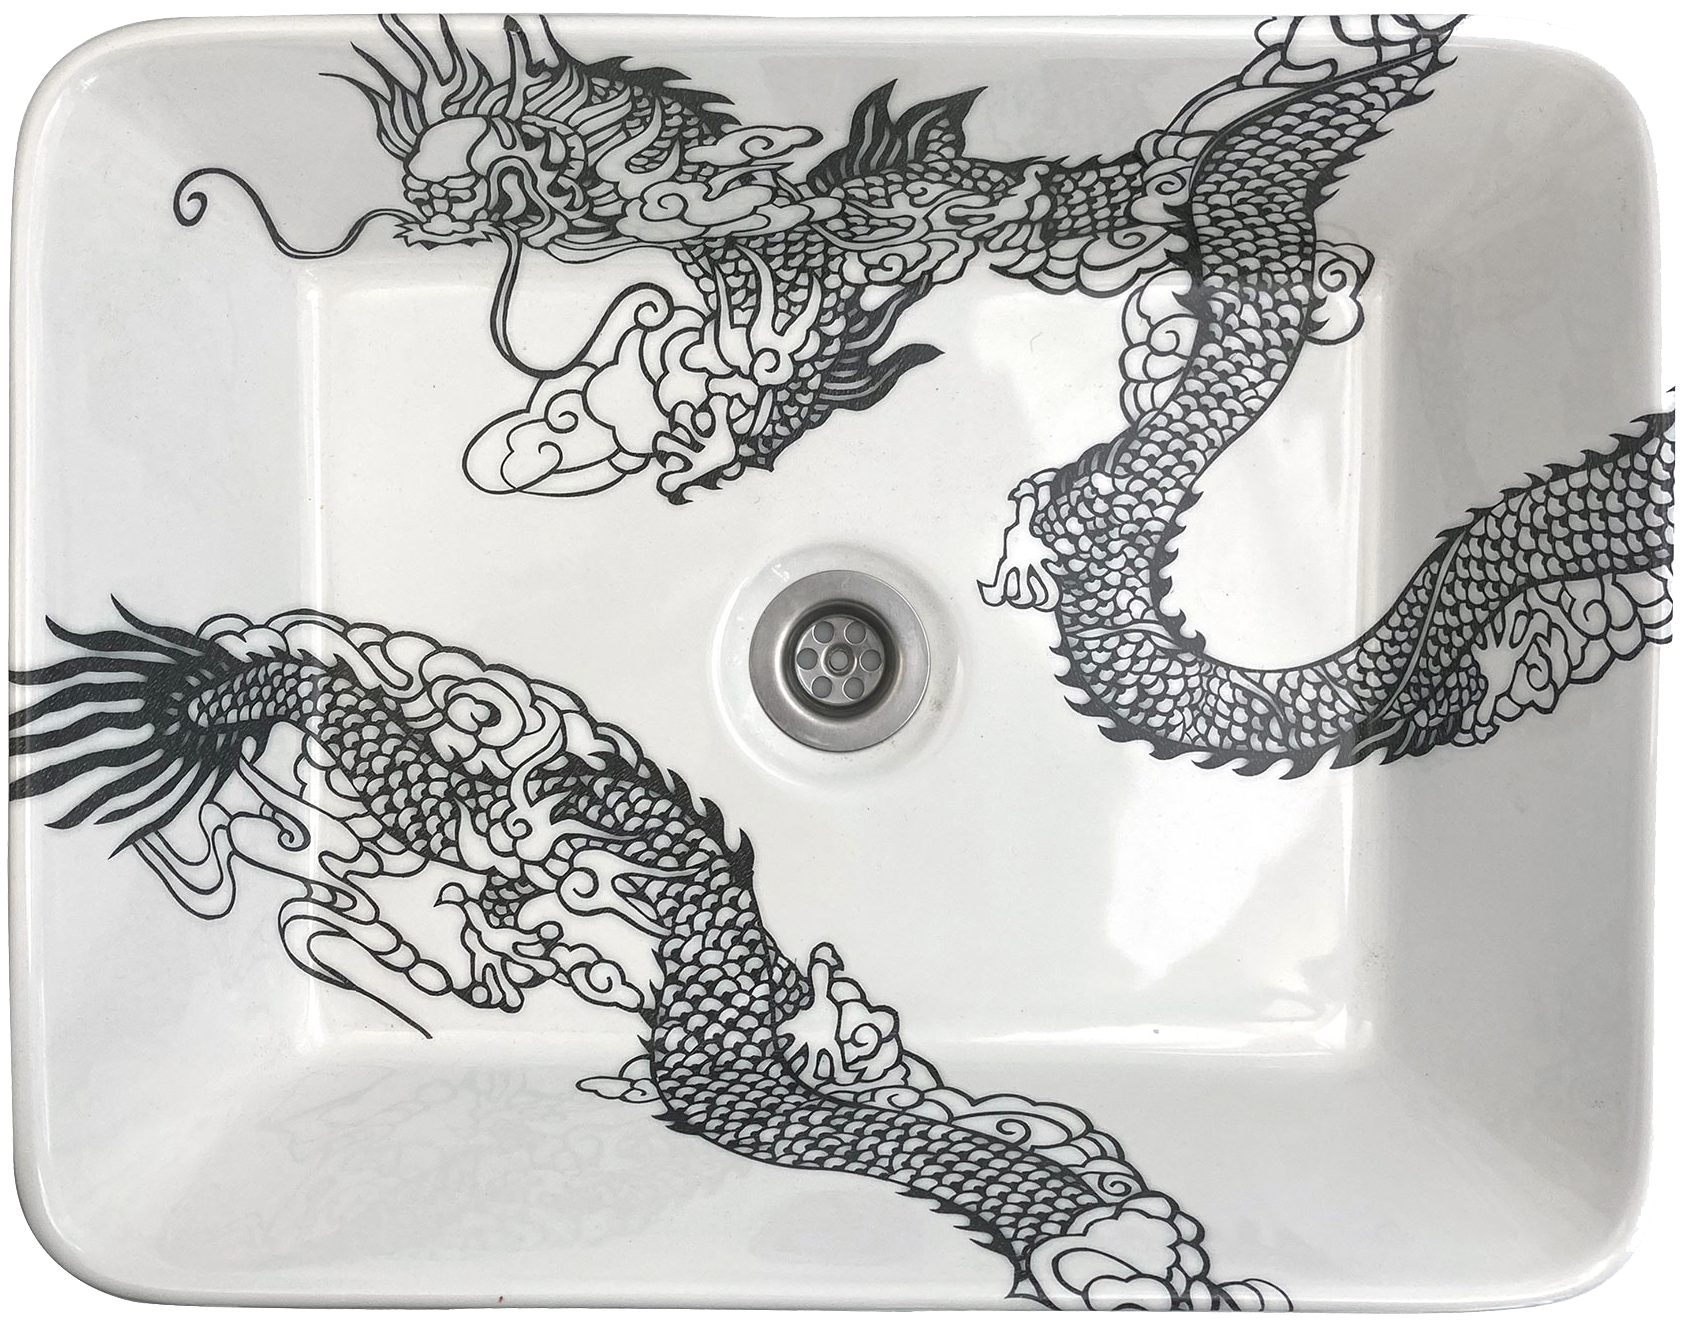 Opbouw wastafel met dragon design van Esther Derkx